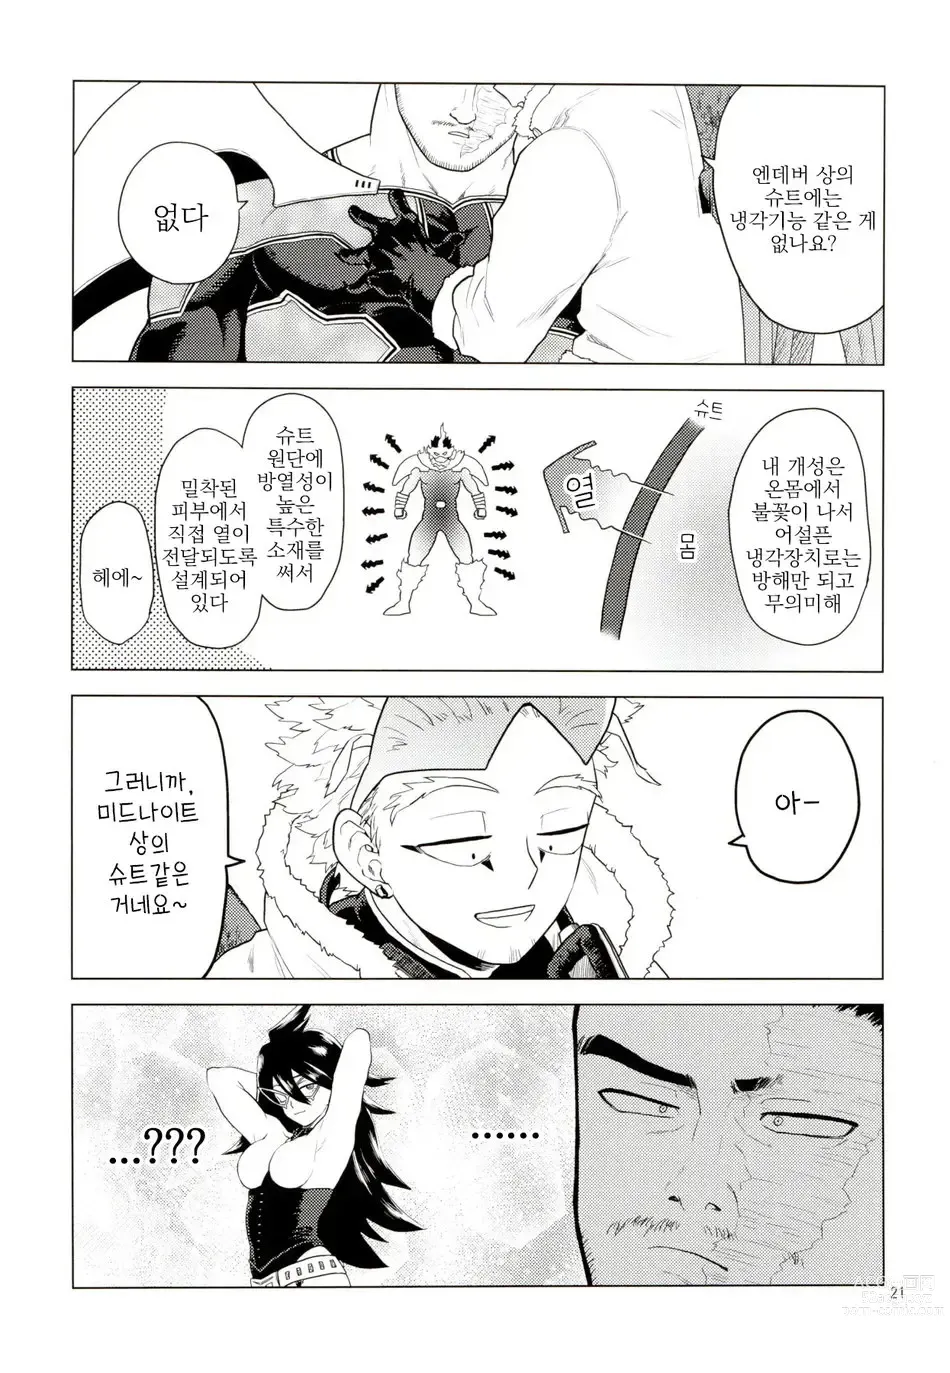 Page 20 of doujinshi Enholog #01